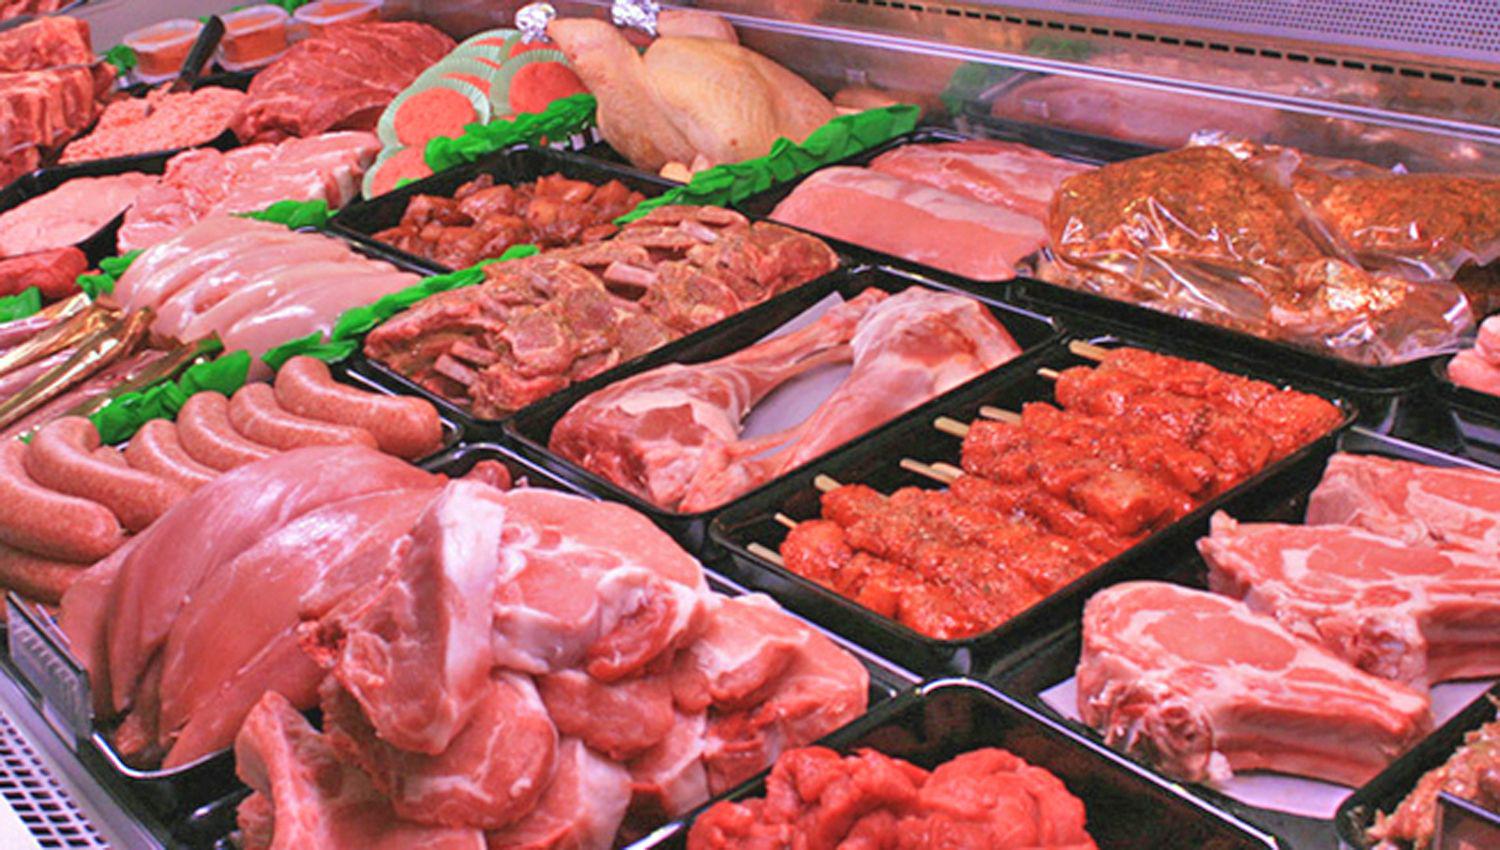 El consumo per caacutepita de carne se mantiene en 110 kg